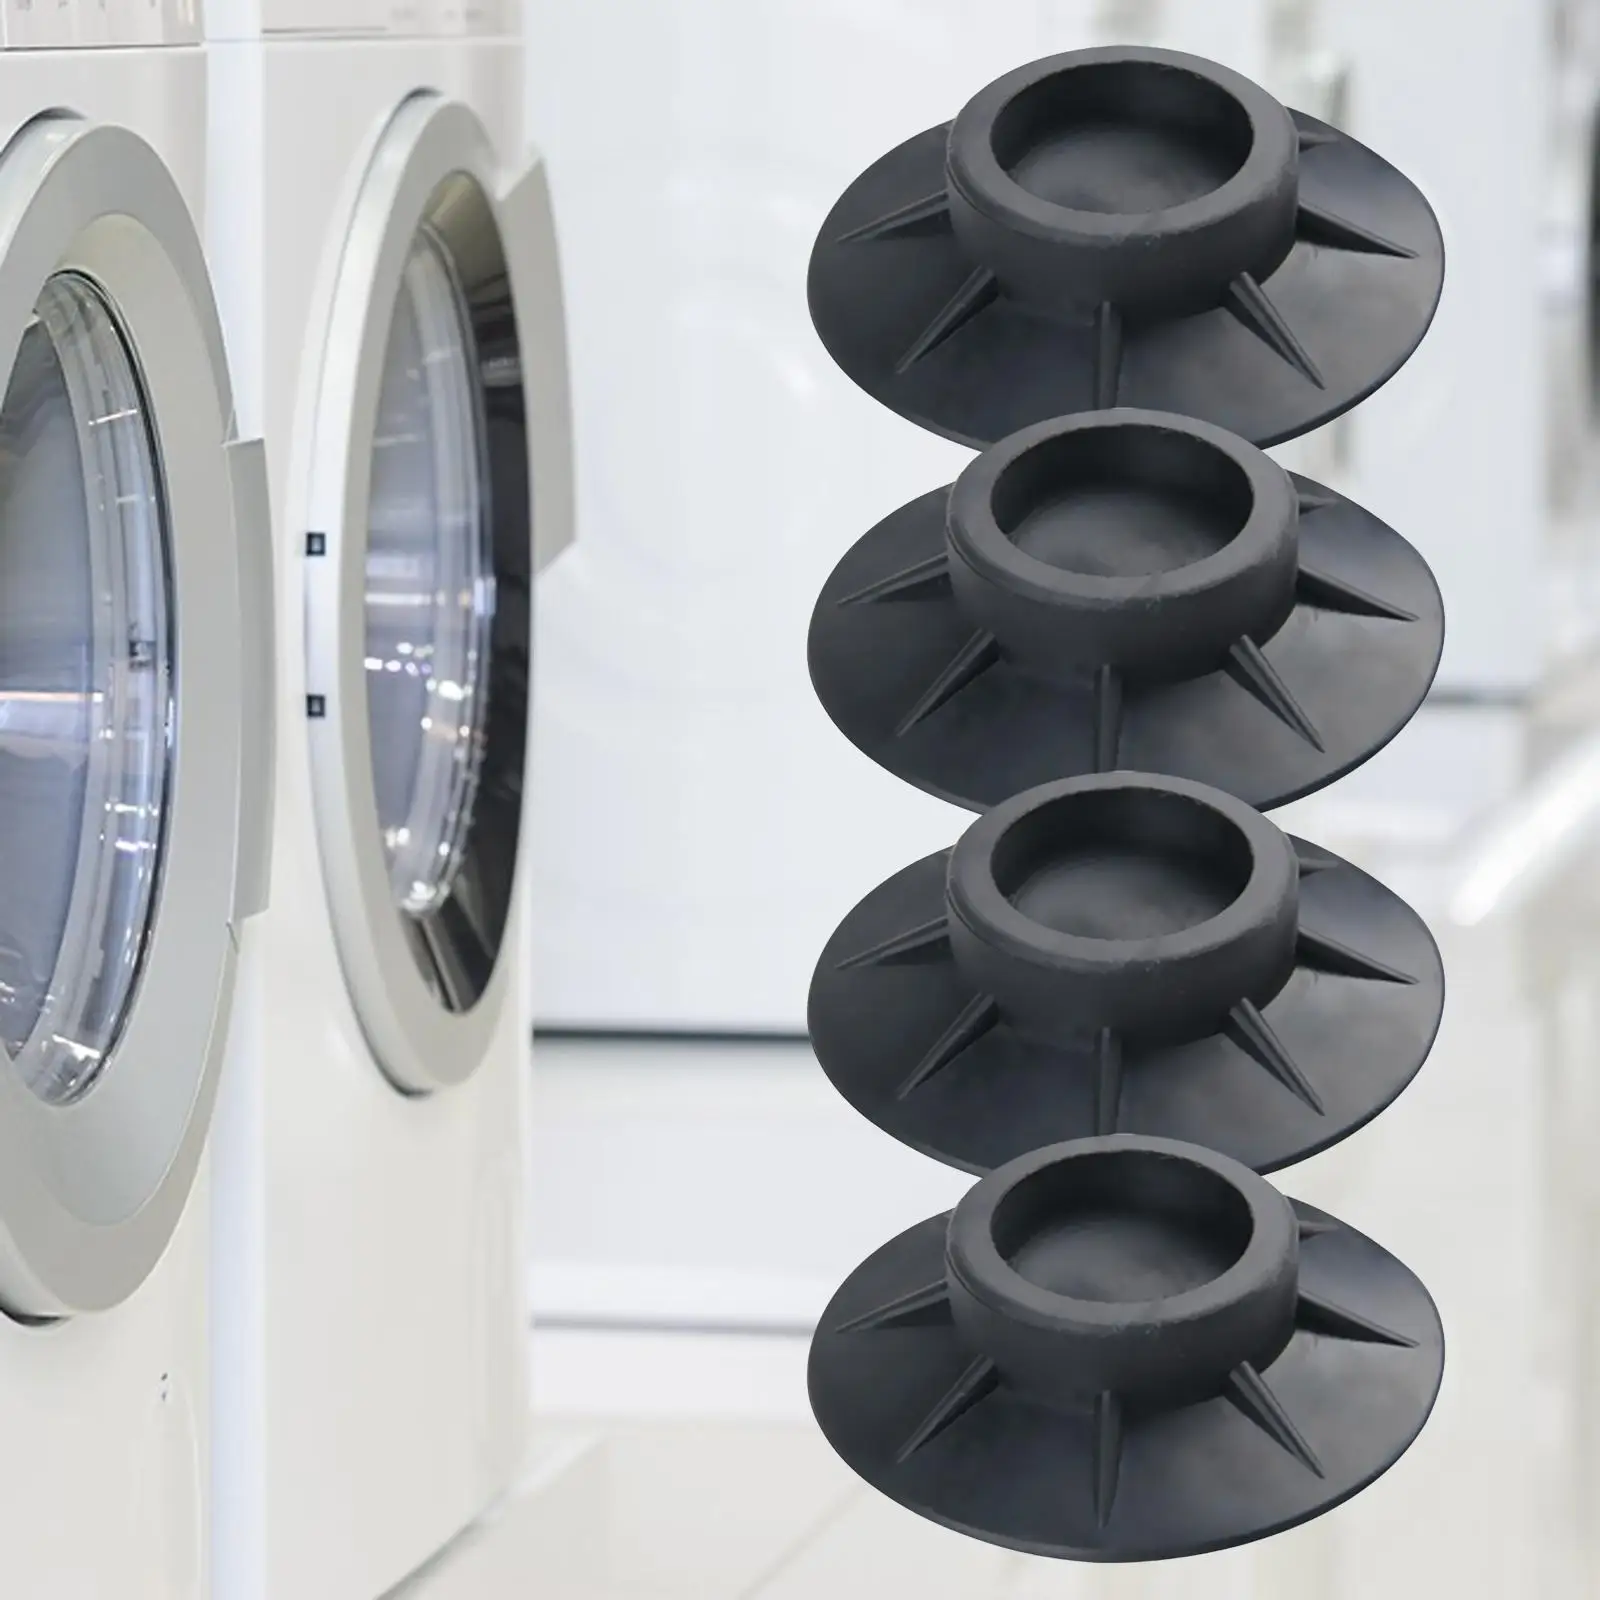 Washing Machine Feet Noise Dampening for Fridge Refrigerator Dishwashers